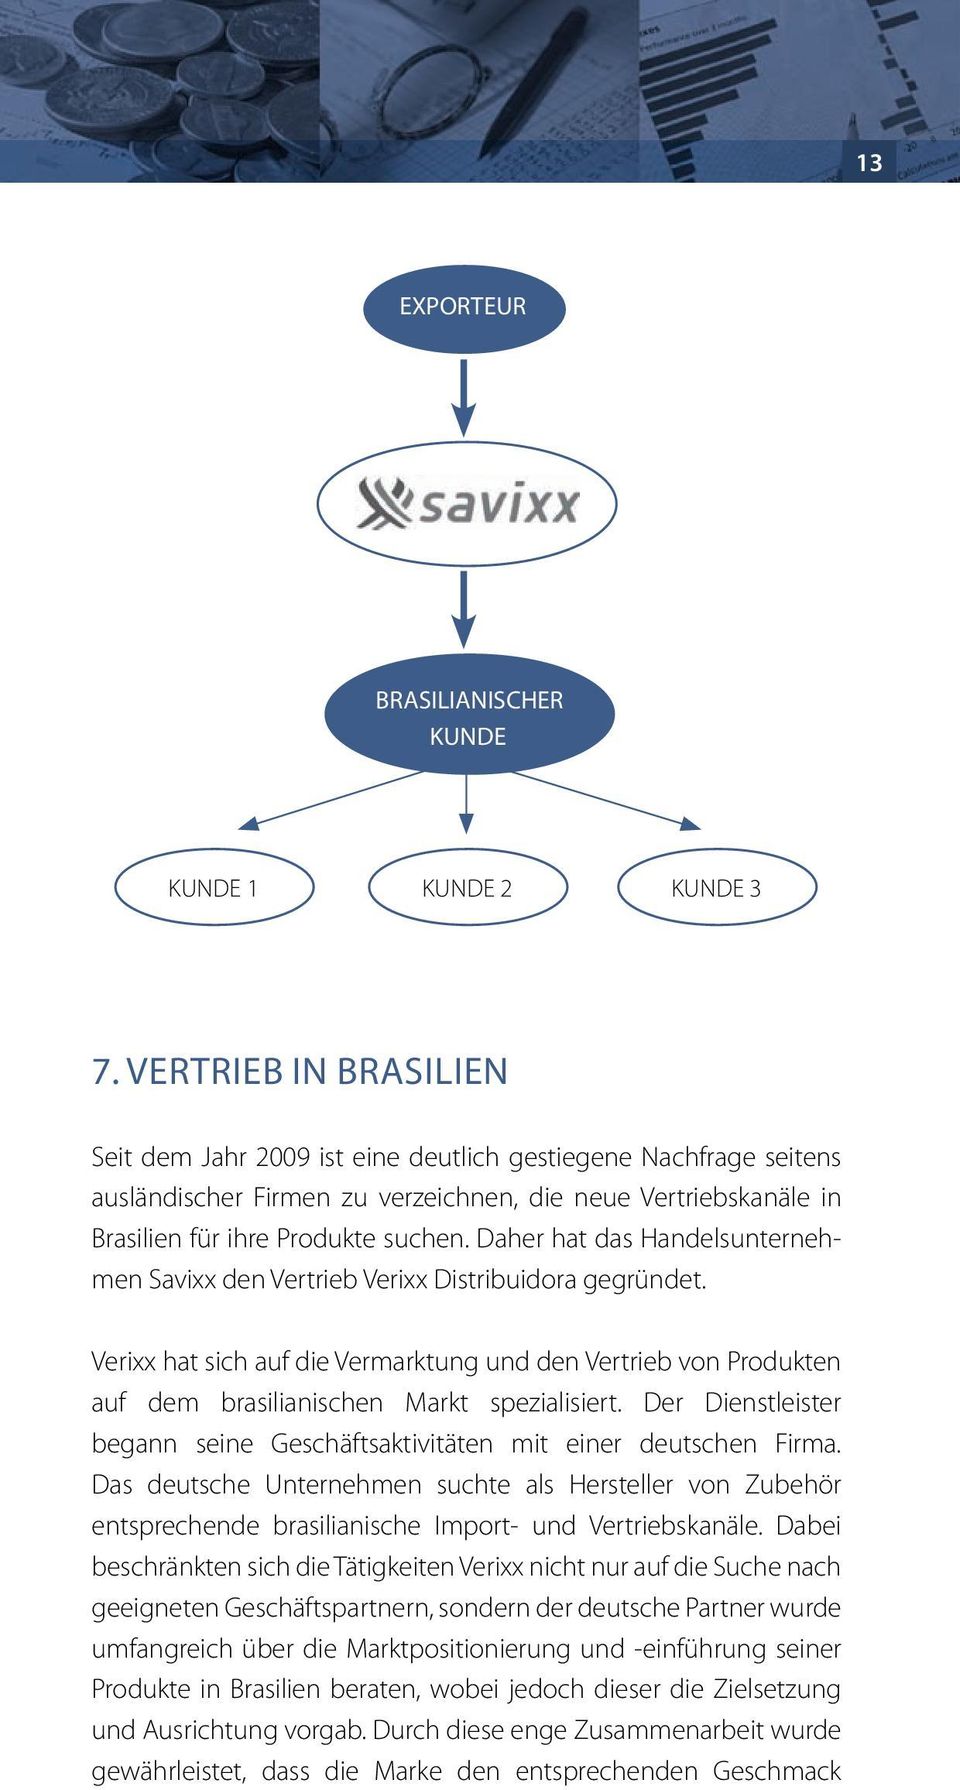 Daher hat das Handelsunternehmen Savixx den Vertrieb Verixx Distribuidora gegründet. Verixx hat sich auf die Vermarktung und den Vertrieb von Produkten auf dem brasilianischen Markt spezialisiert.